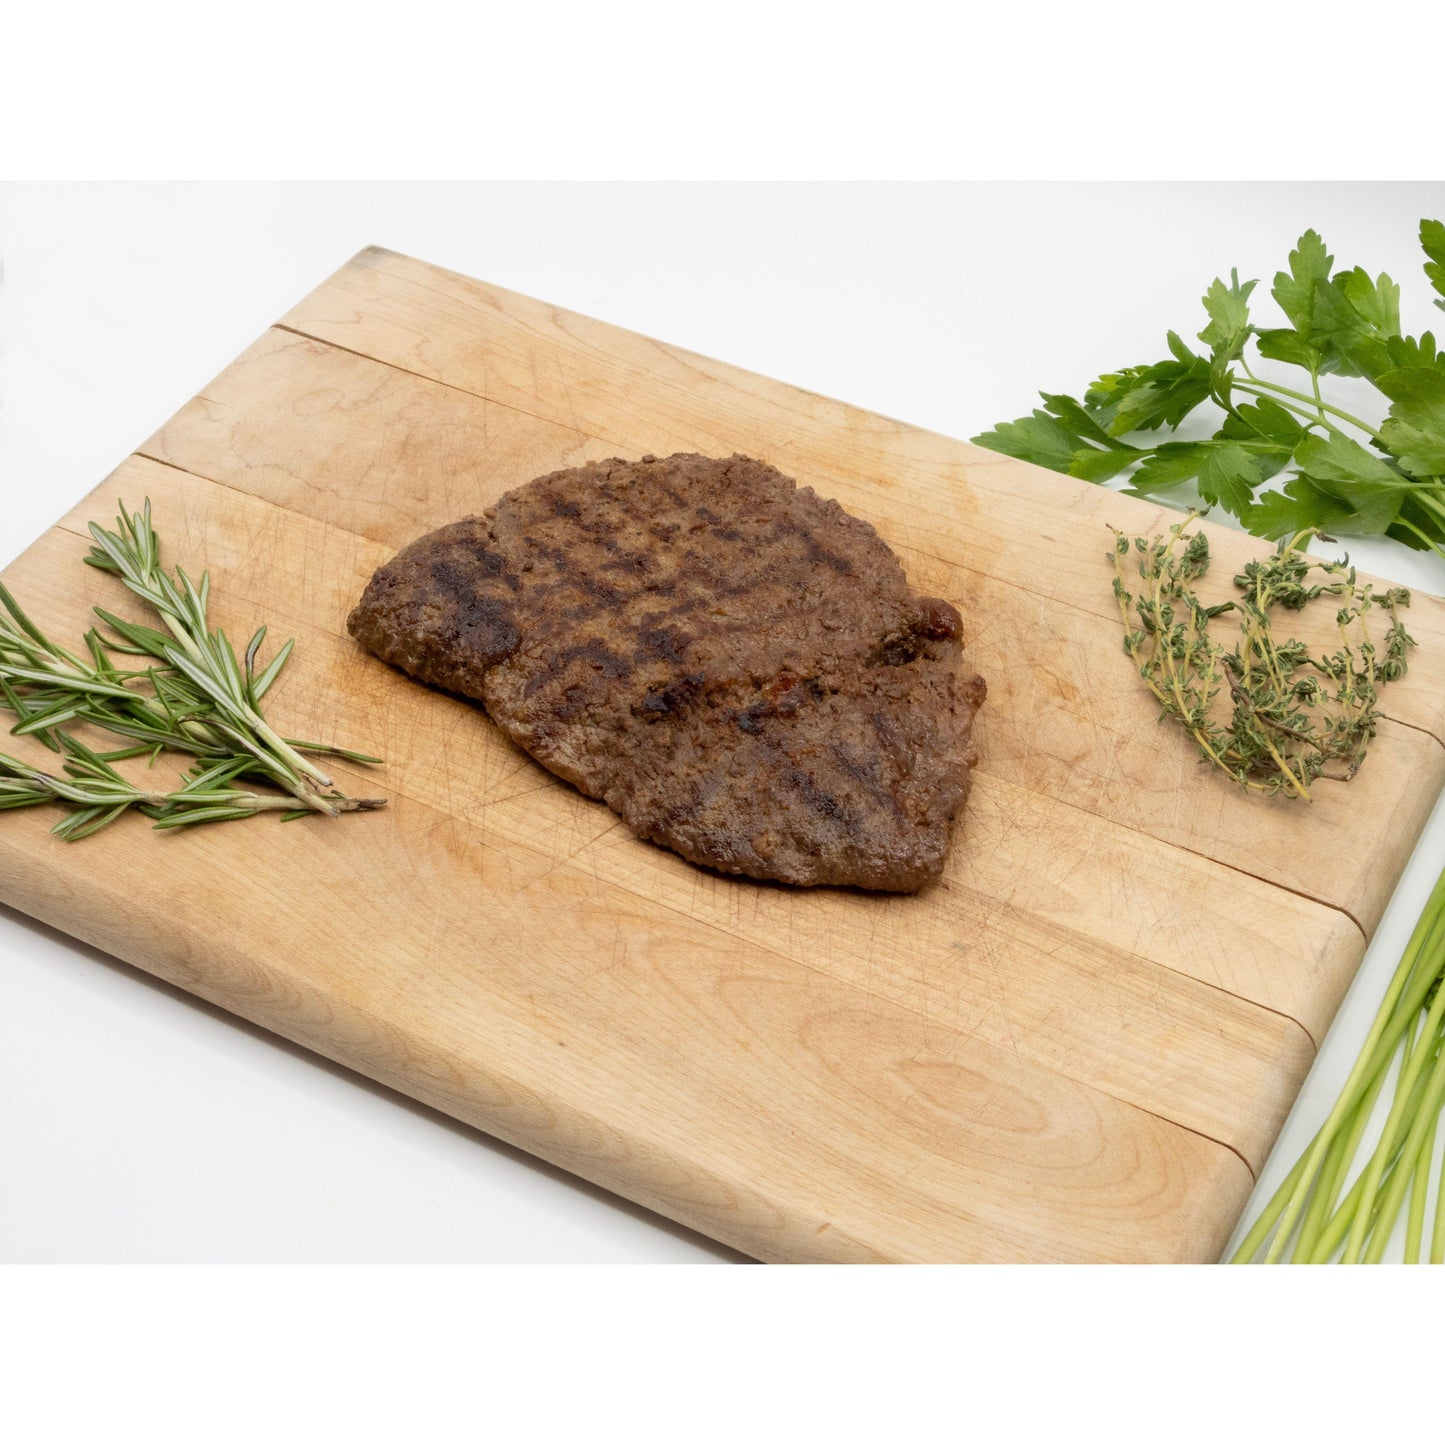 100% Grassfed Wagyu Beef Sirloin Tip Steak - Nutrient Farm